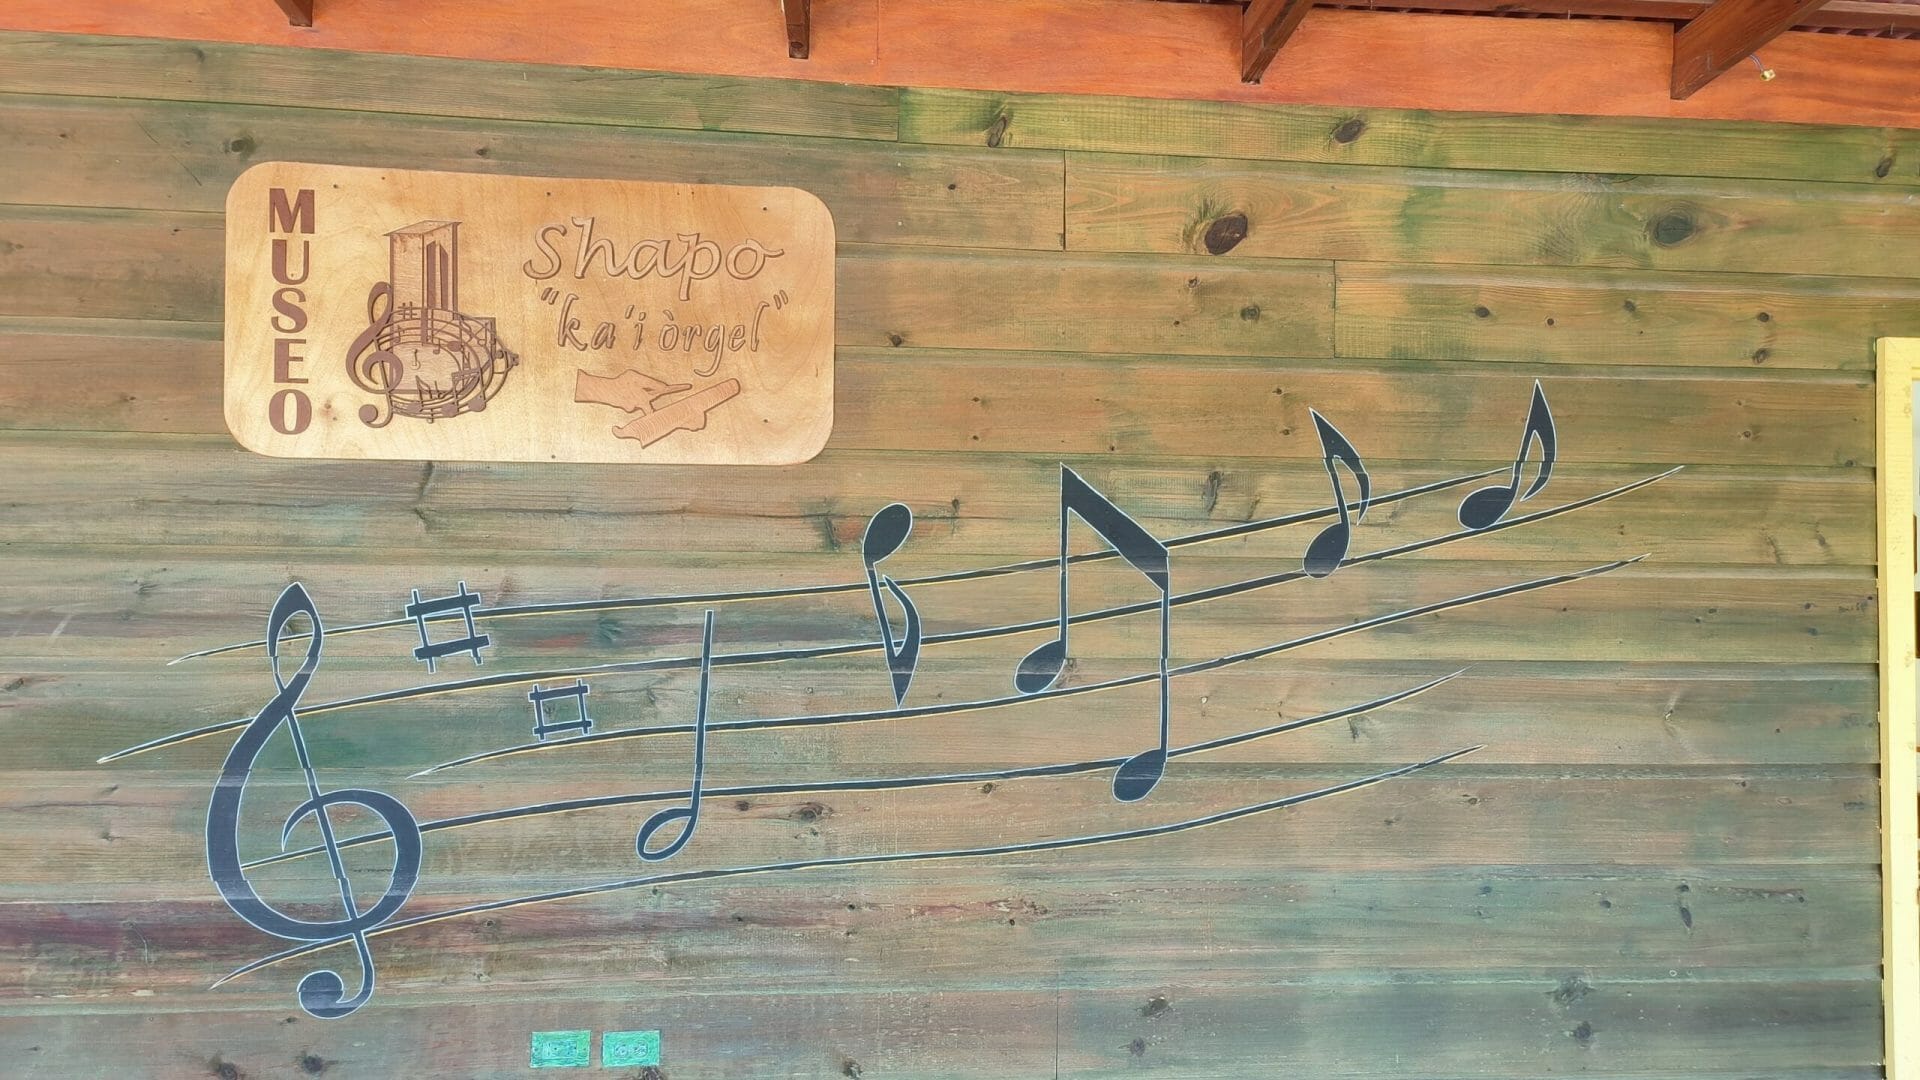 Ontdek de muziekcultuur van Curaçao